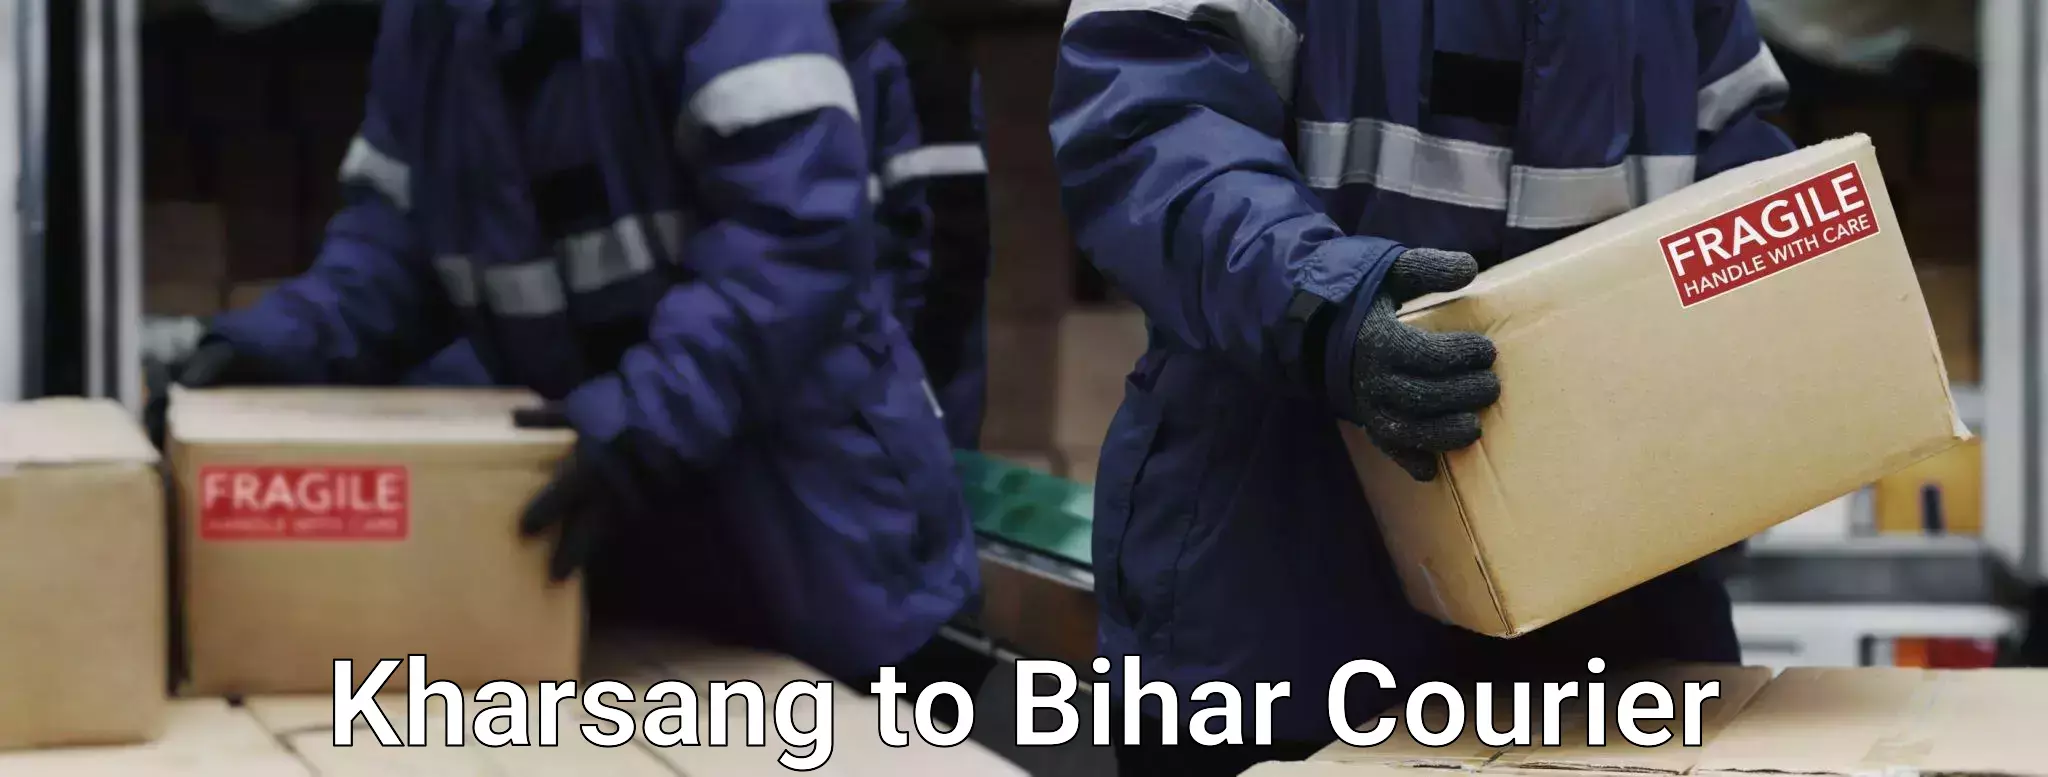 Baggage shipping advice Kharsang to Piro